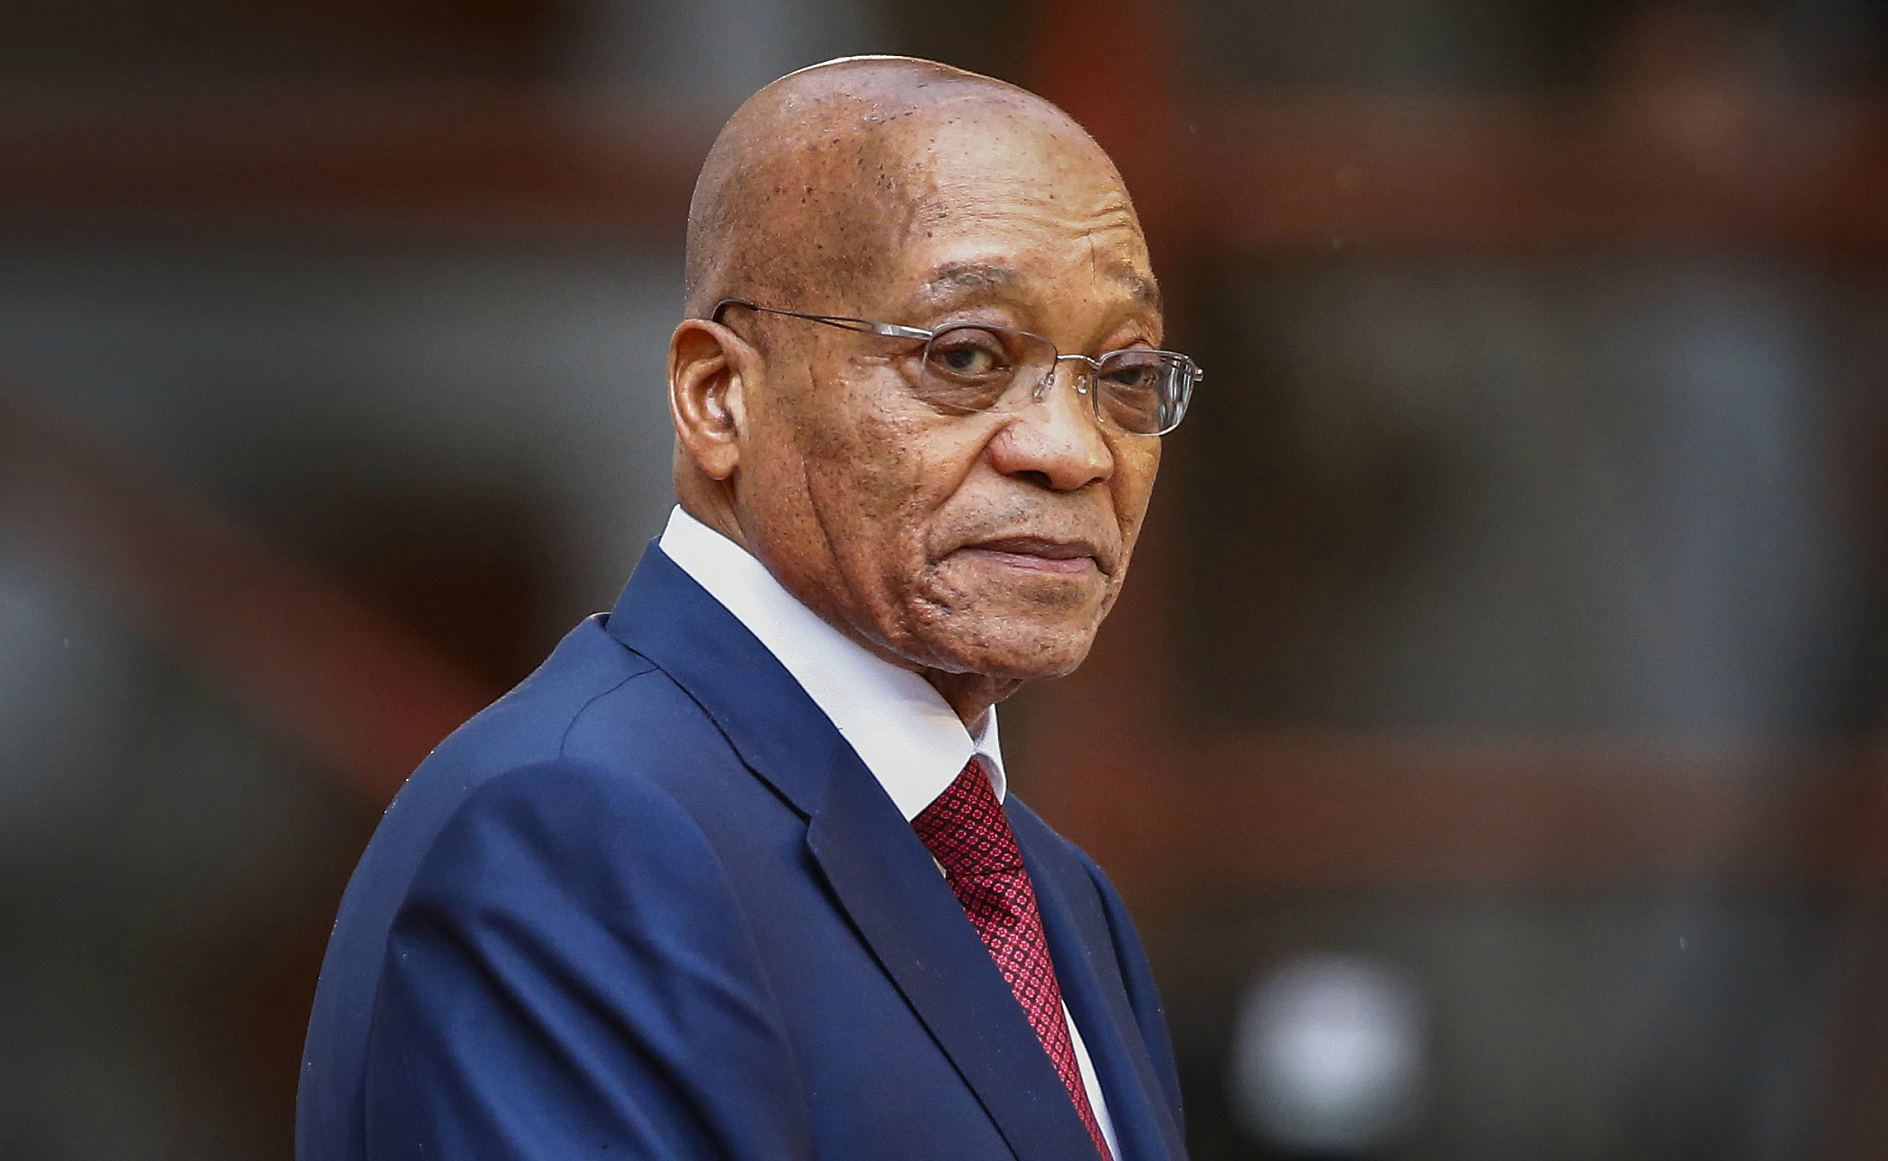 El mandatario Jacob Zuma se encuentra involucrado en numerosos escándalos de corrupción y es cada vez menos popular incluso en el partido del Gobierno